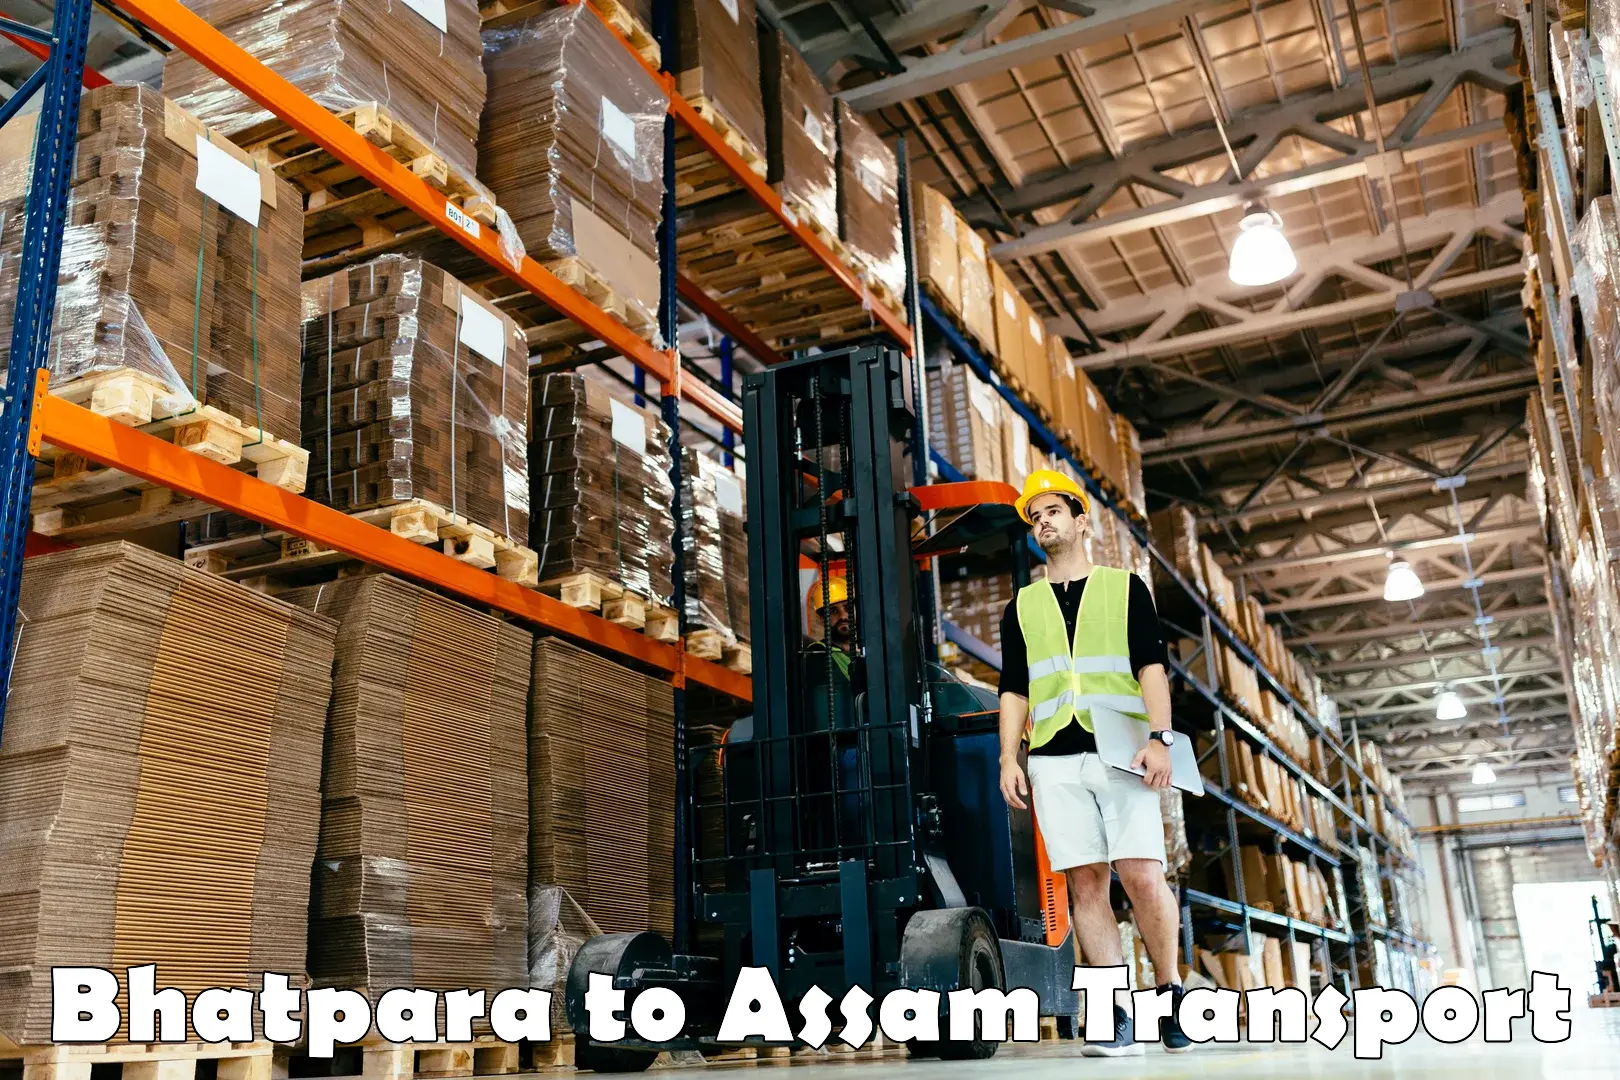 Cargo transport services Bhatpara to Assam